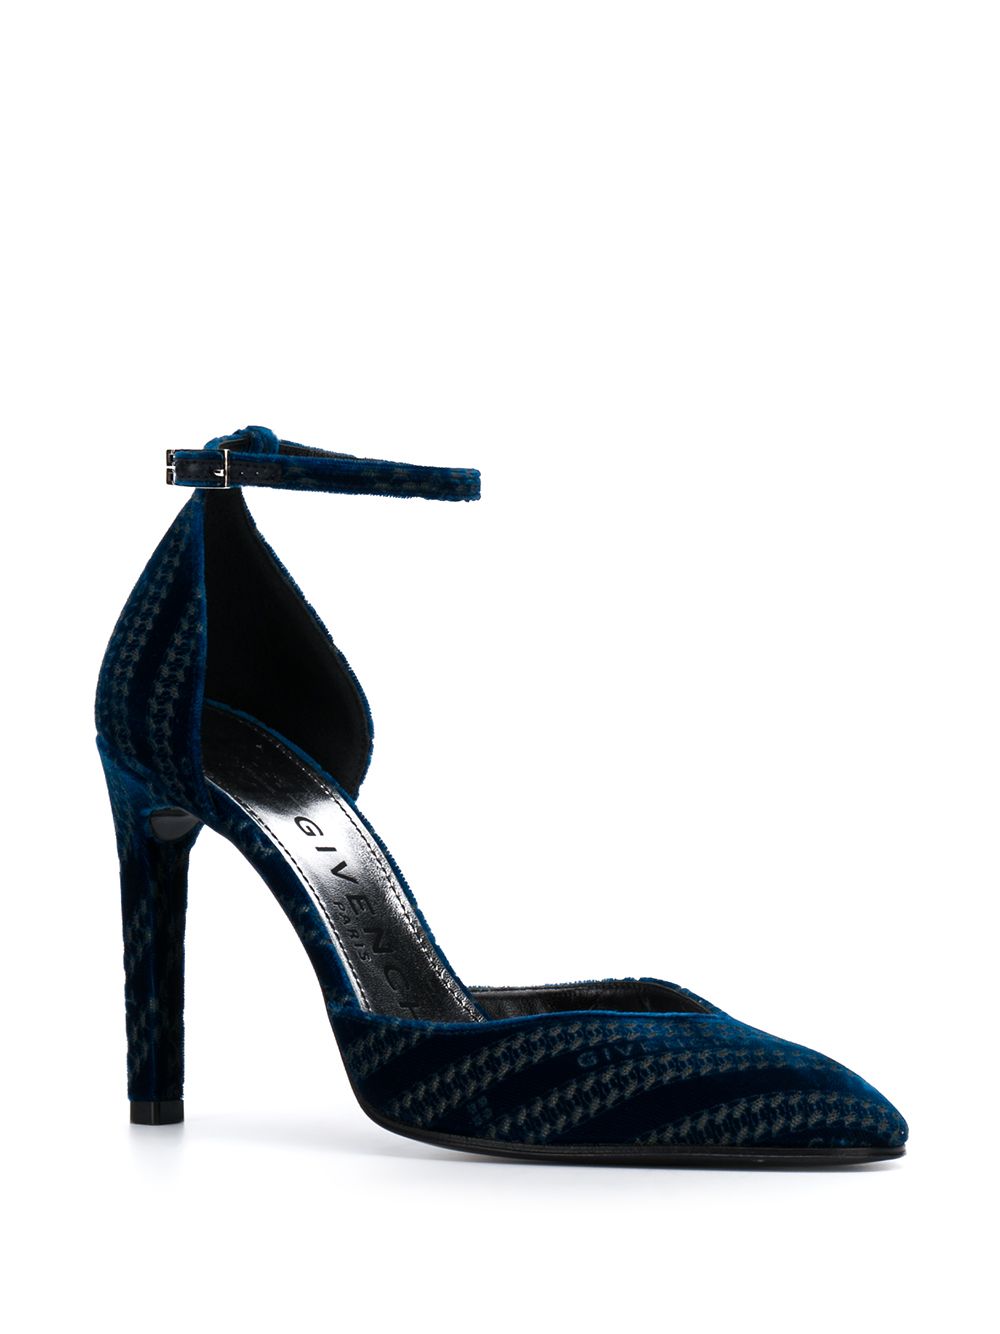 фото Givenchy туфли-лодочки с тиснением